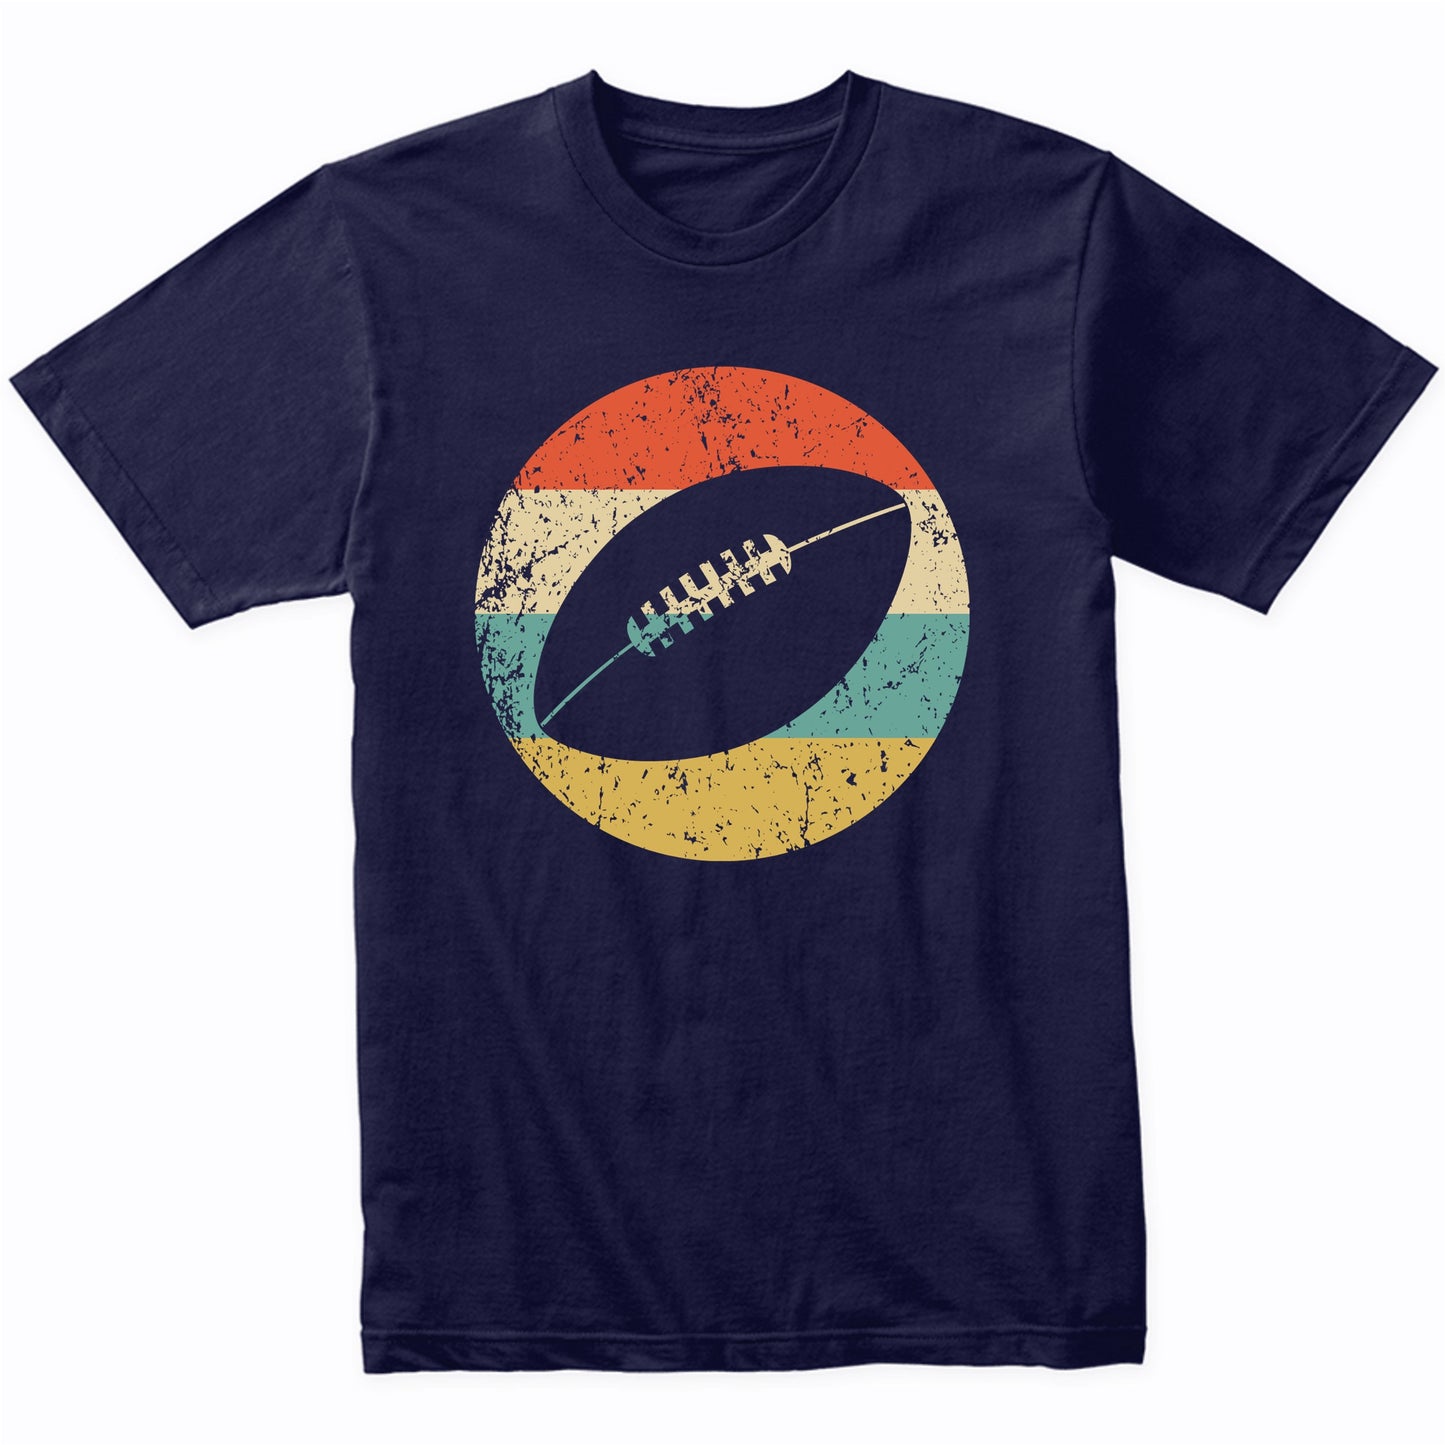 Fantasy Football Shirt - Retro Football Icon T-Shirt